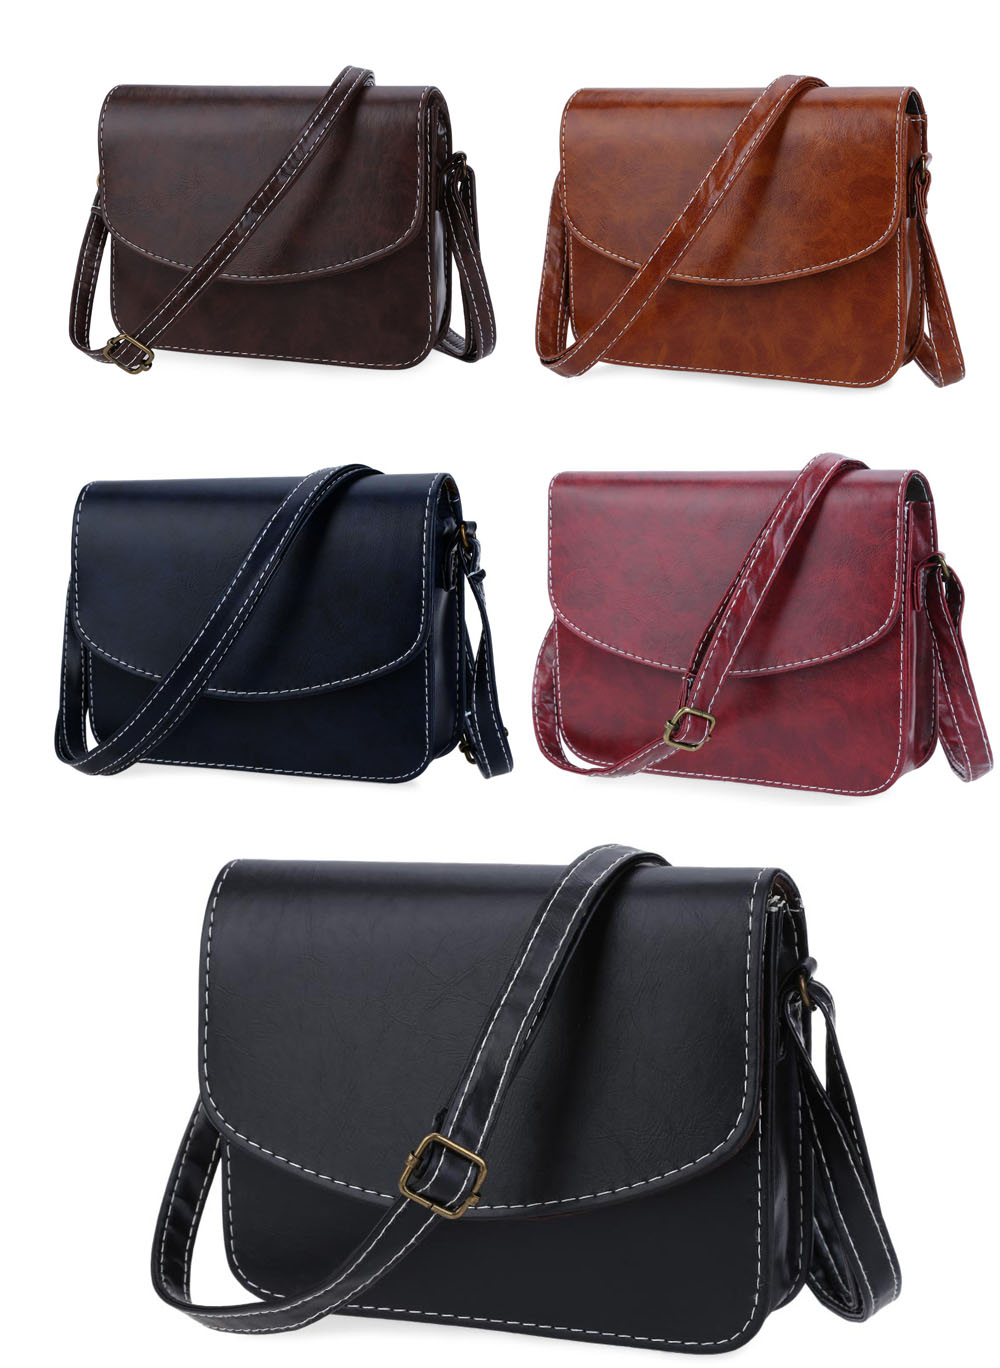 Old Classical Women Shoulder Bag Imitation Leather Messenger Packet Satchel Handbags